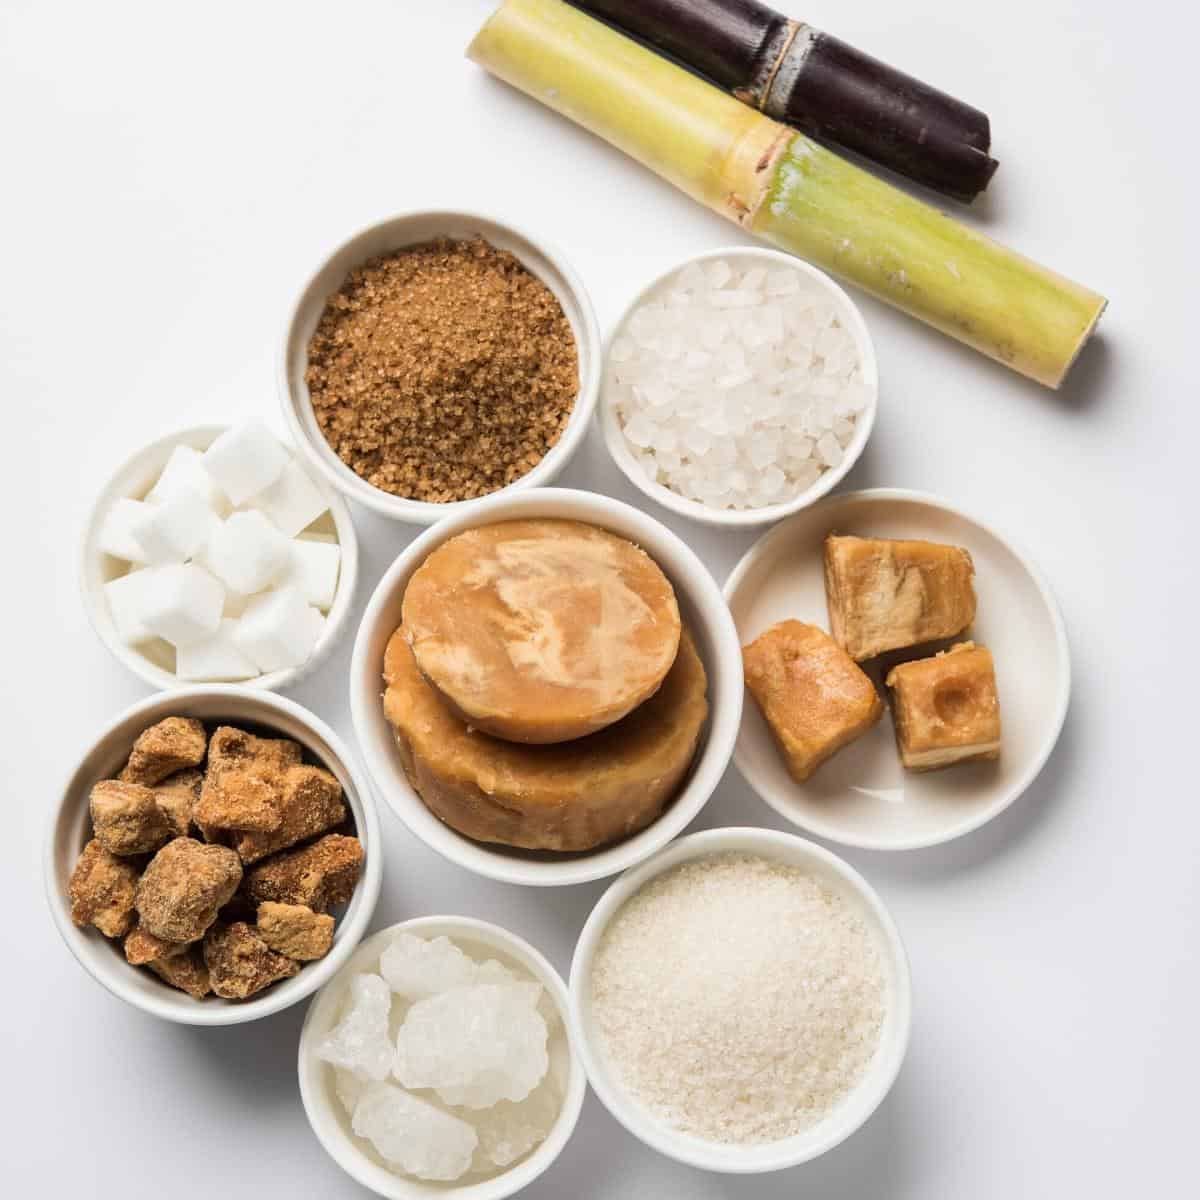 A variety of sugars